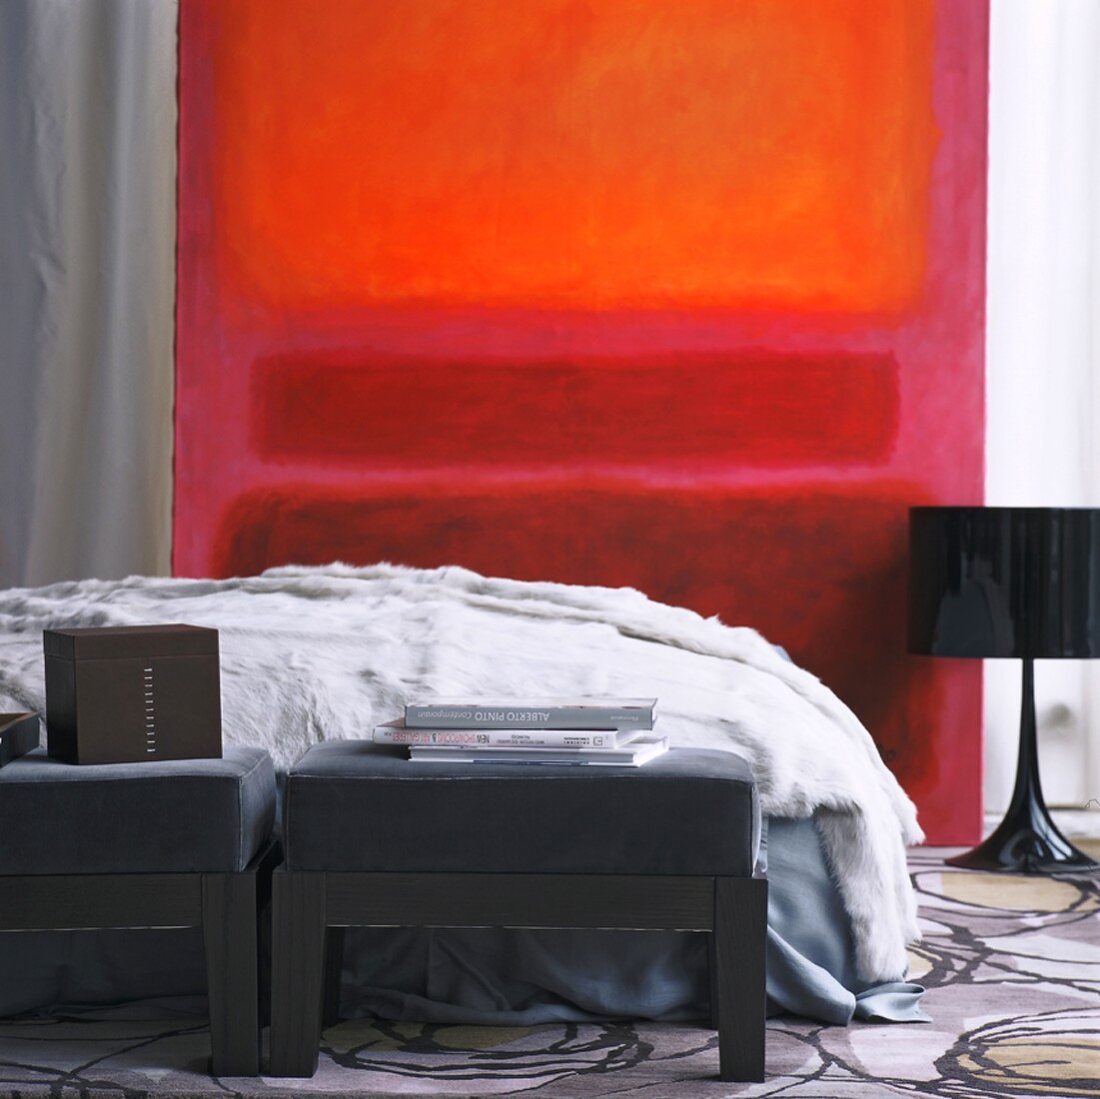 Ausschnitt eines Schlafzimmers mit leuchtendem, rotem Bild und einer schwarzen Retrolampe neben dem Doppelbett mit Felldecke